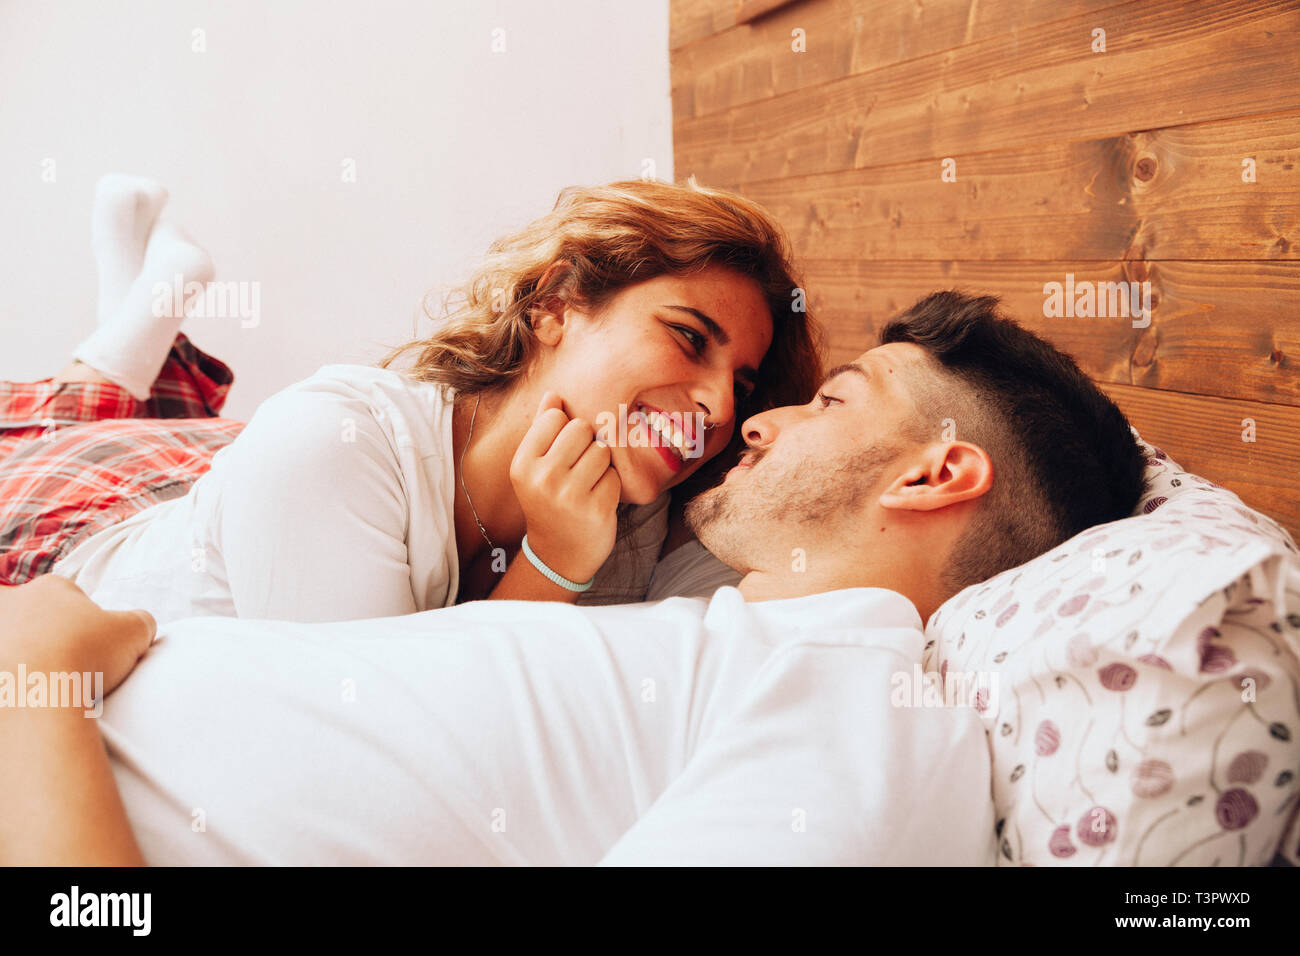 Young smiling couple hétérosexuel couchés ensemble sur le lit Banque D'Images